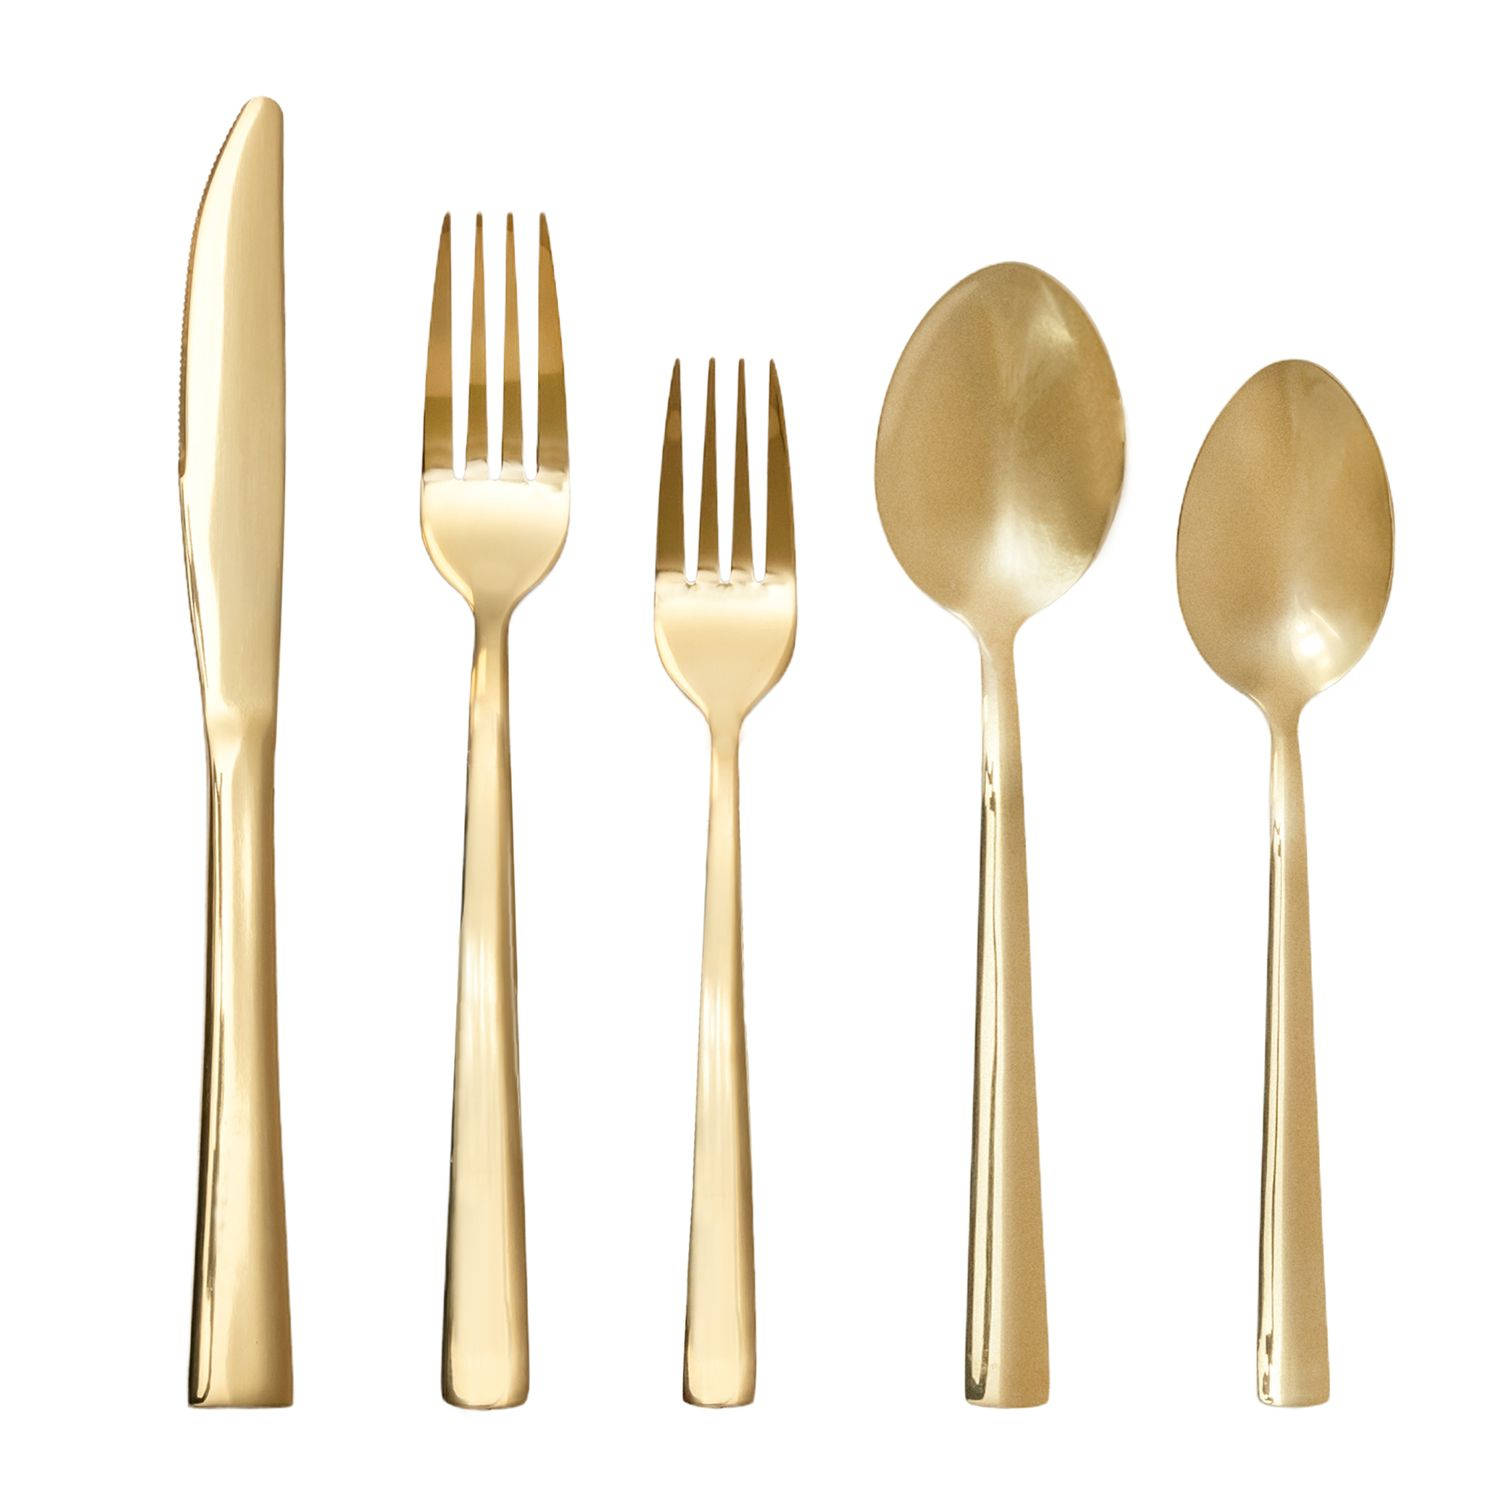 Intirilife 20-delige bestekset van roestvrij staal in goud - 4 stuks vorken, taartvorkjes, messen, lepels, dessertlepels